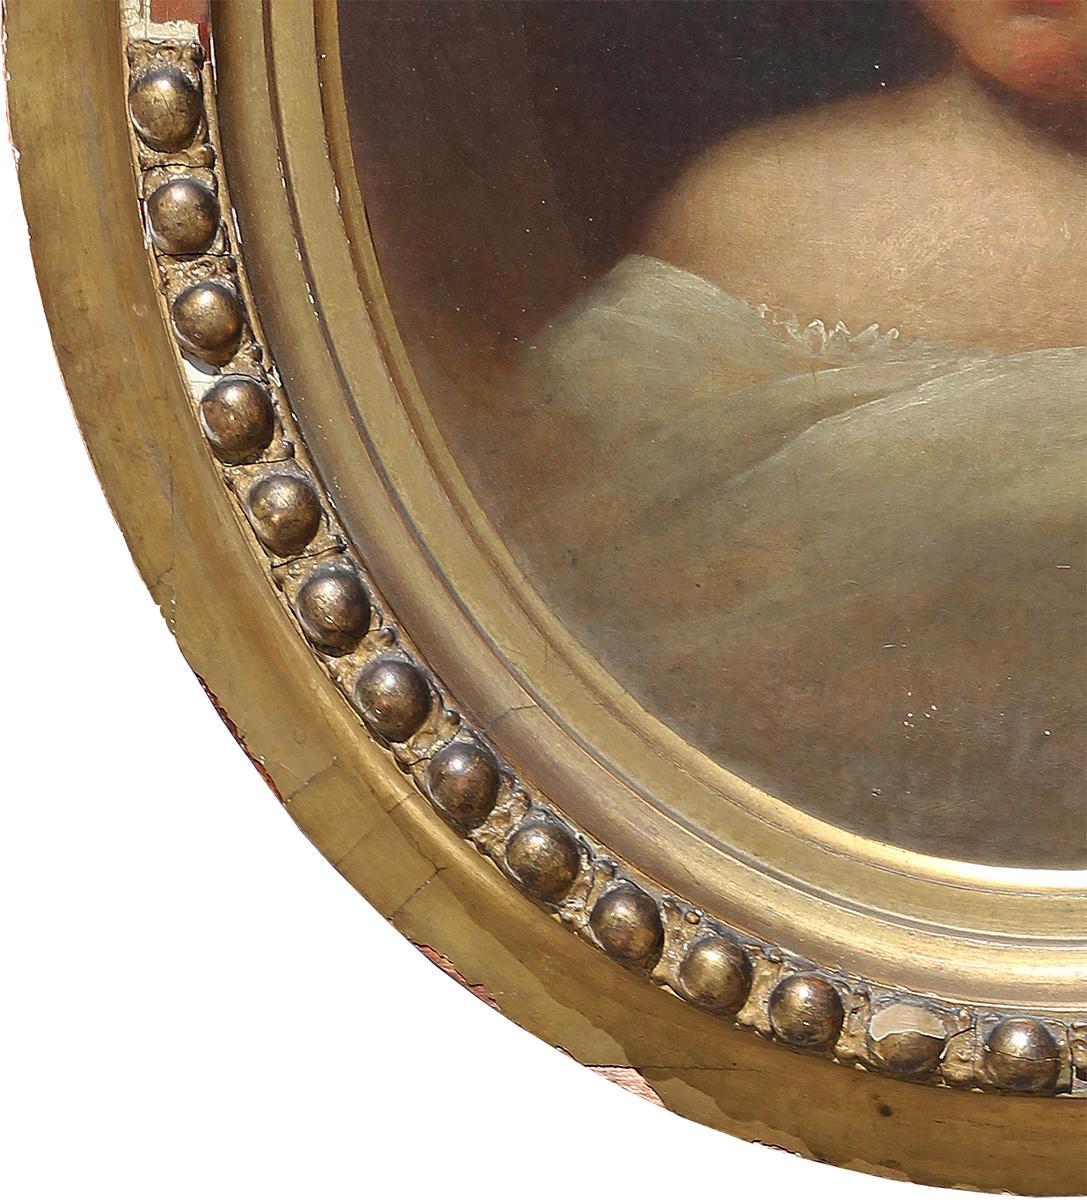 Ovales expressionistisches Porträt einer jungen Dame mit kurzen lockigen Haaren und weißem Kleidungsstück. Unsigniert. Ausgestattet von Theodore Kelley (signiert / gestempelt auf der Rückseite). Gerahmt in einem antiken, geschnitzten ovalen Rahmen.